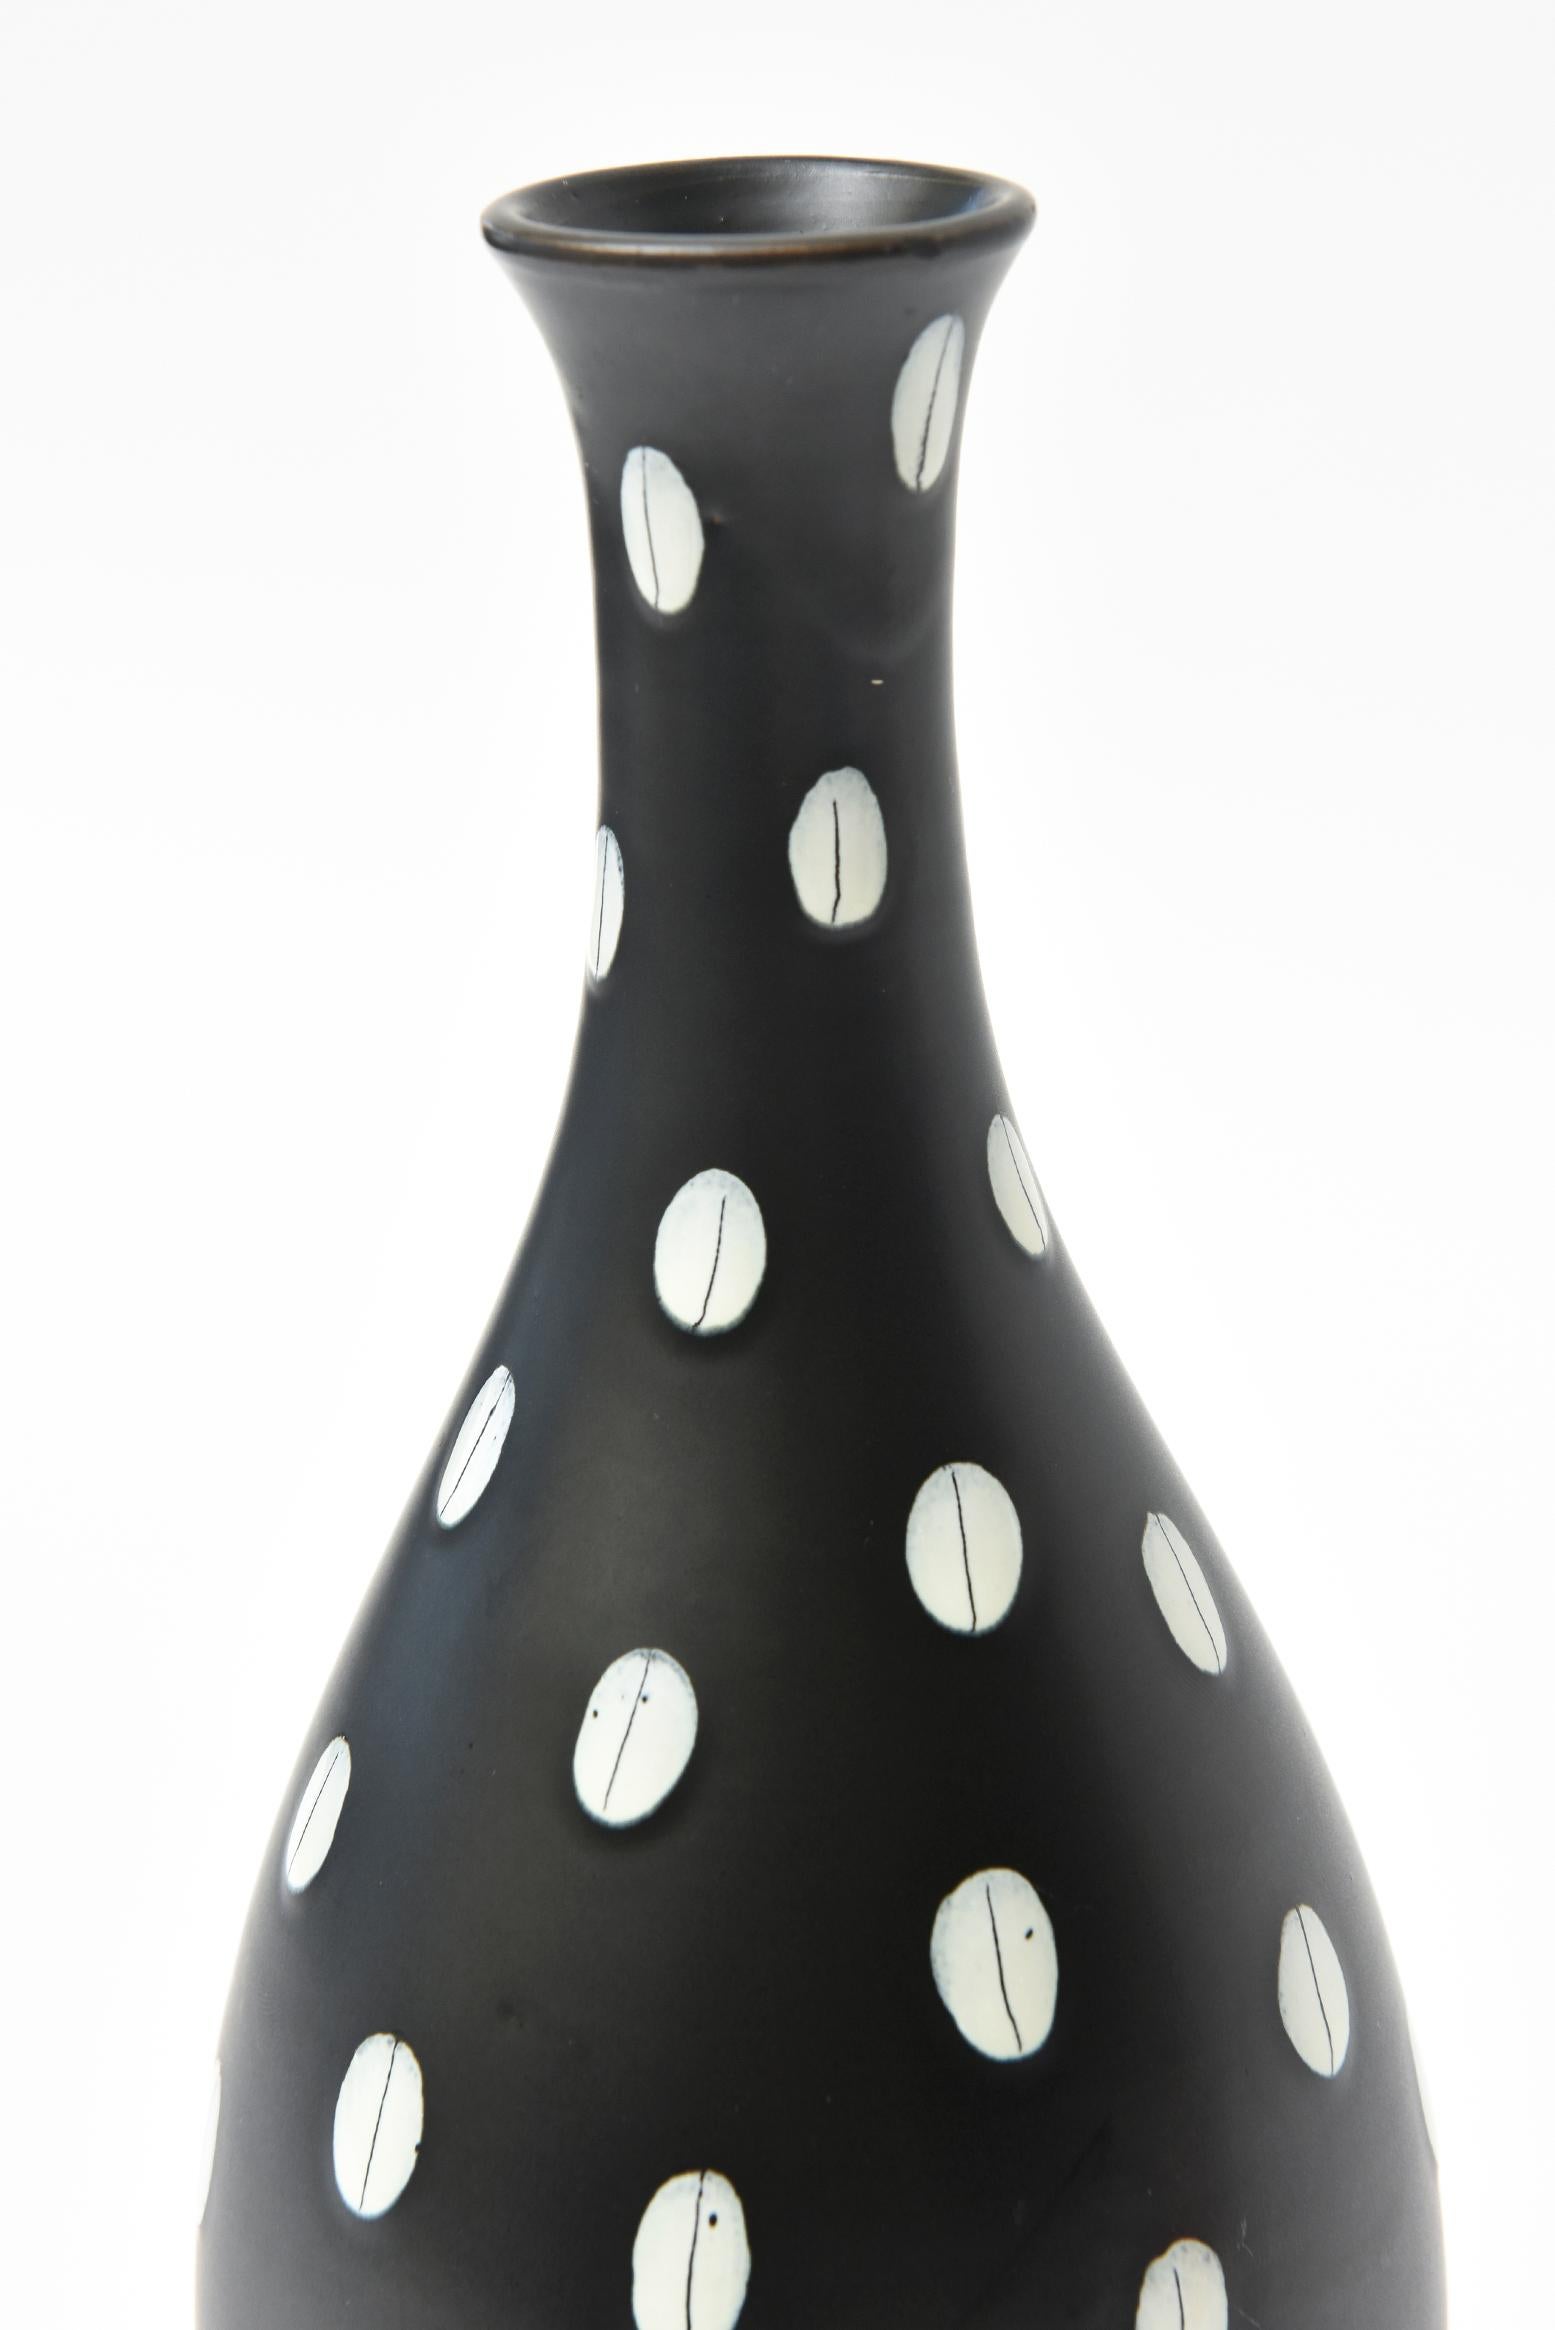 Aldo Londi for Bitossi Italian Black and White Ceramic Vase Vintage In Good Condition In North Miami, FL